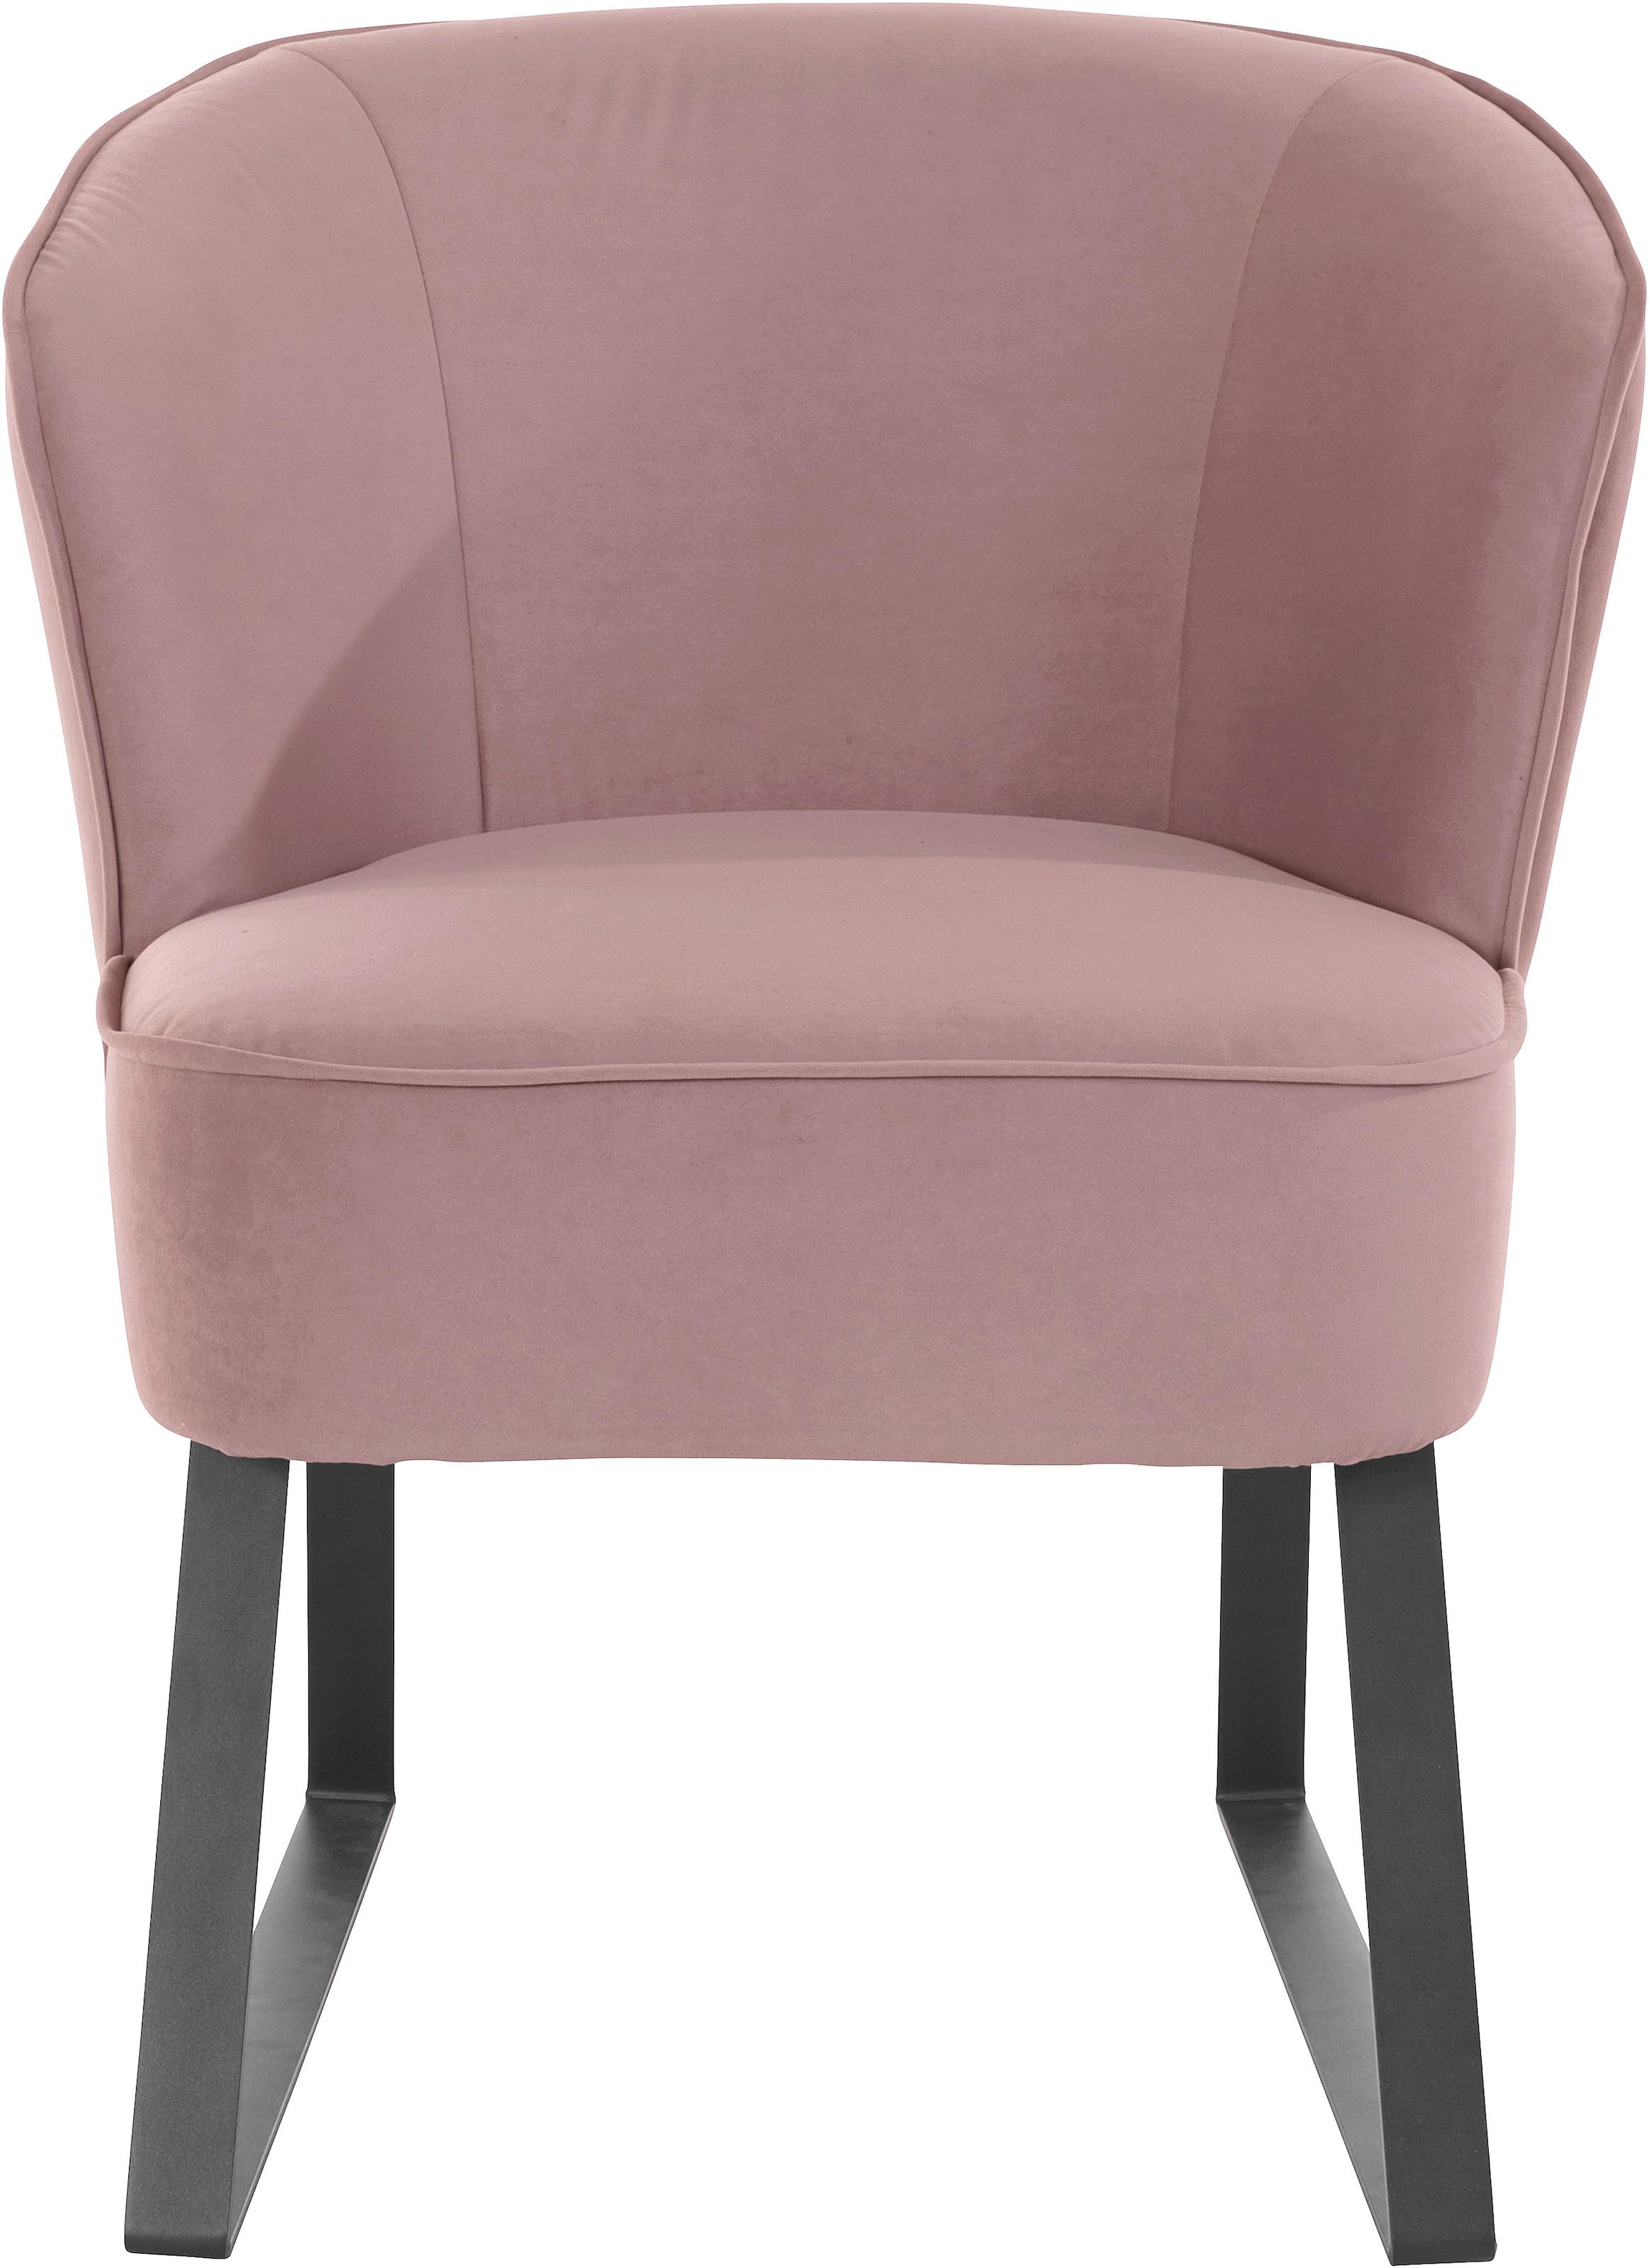 exxpo - sofa fashion Sessel "Americano", mit Keder und Metallfüßen, Bezug in verschiedenen Qualitäten, 1 Stck.